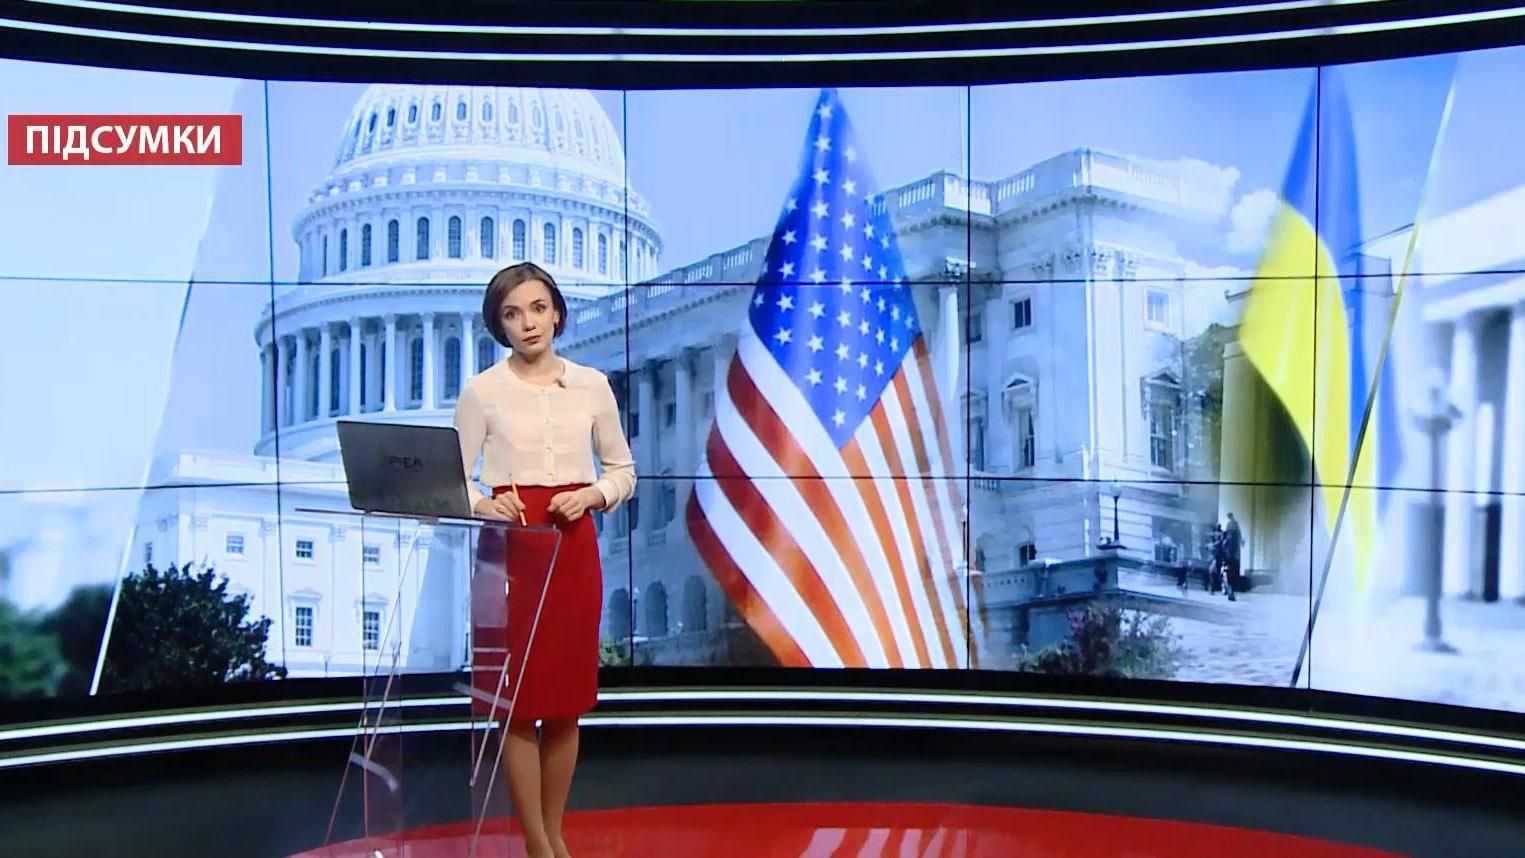 Підсумковий випуск новин за 21:00: Наслідки виборів в США для України. Комуналка з комісією